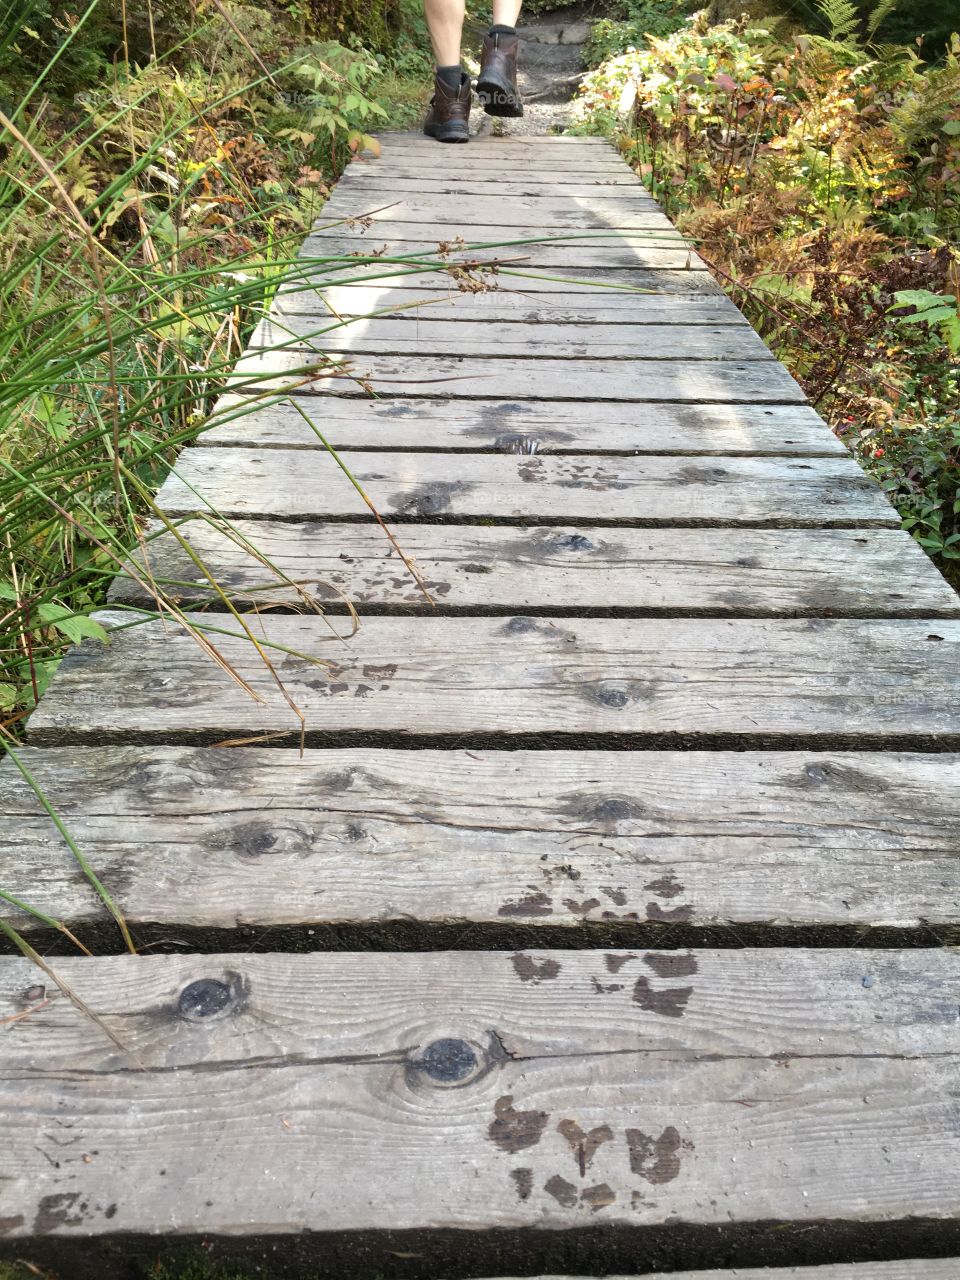 Footprints on the boardwalk